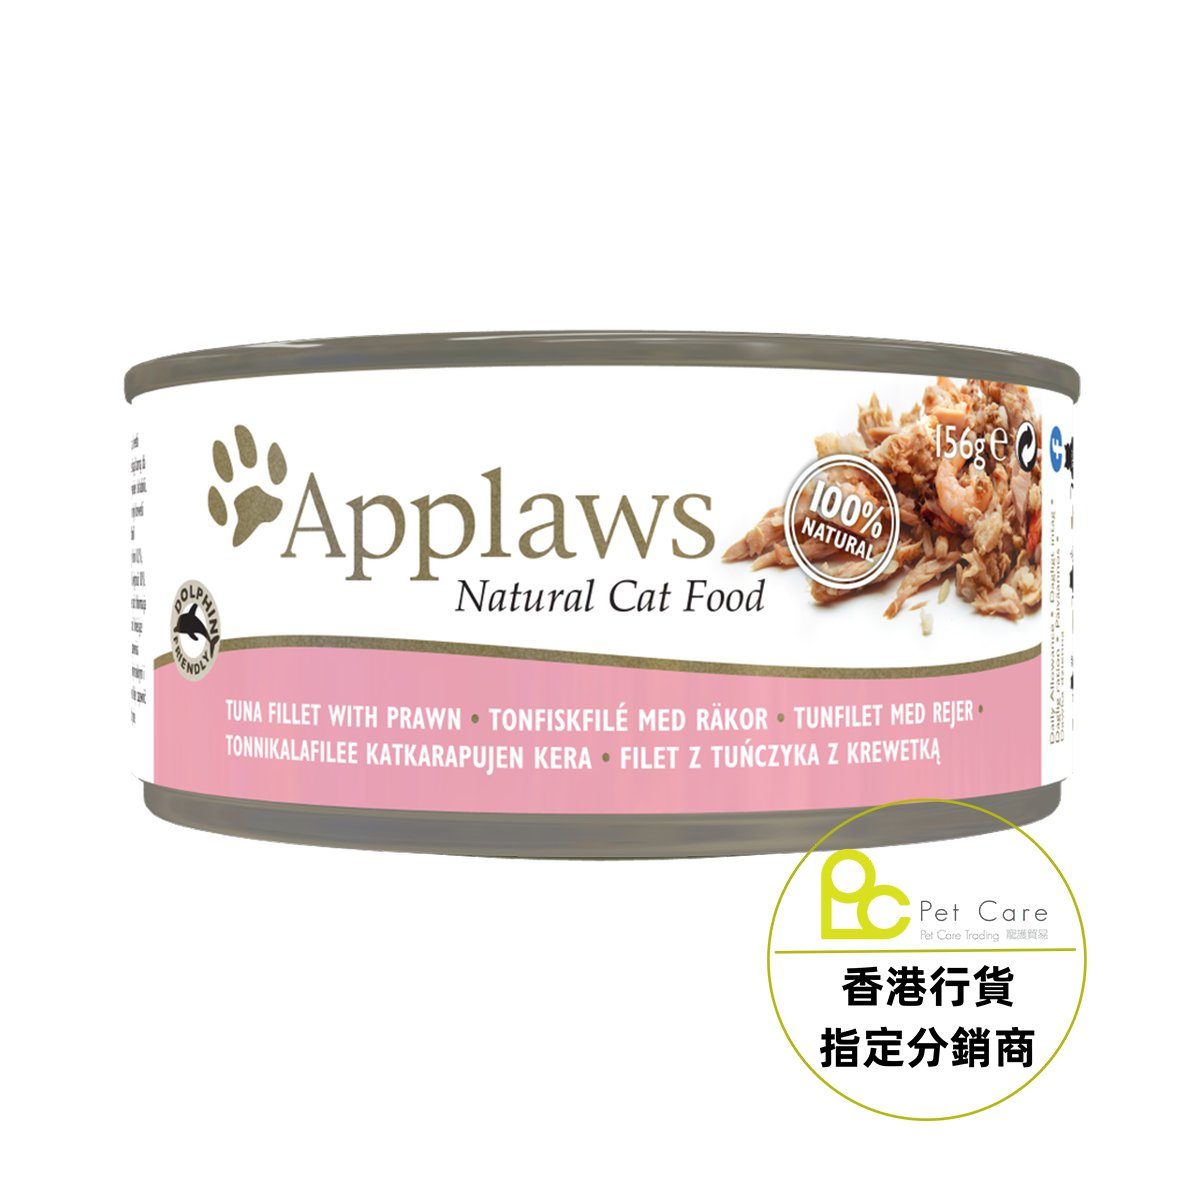 Applaws 全天然 156g 貓罐頭 - 吞拿魚+蝦 (大) - 幸福站